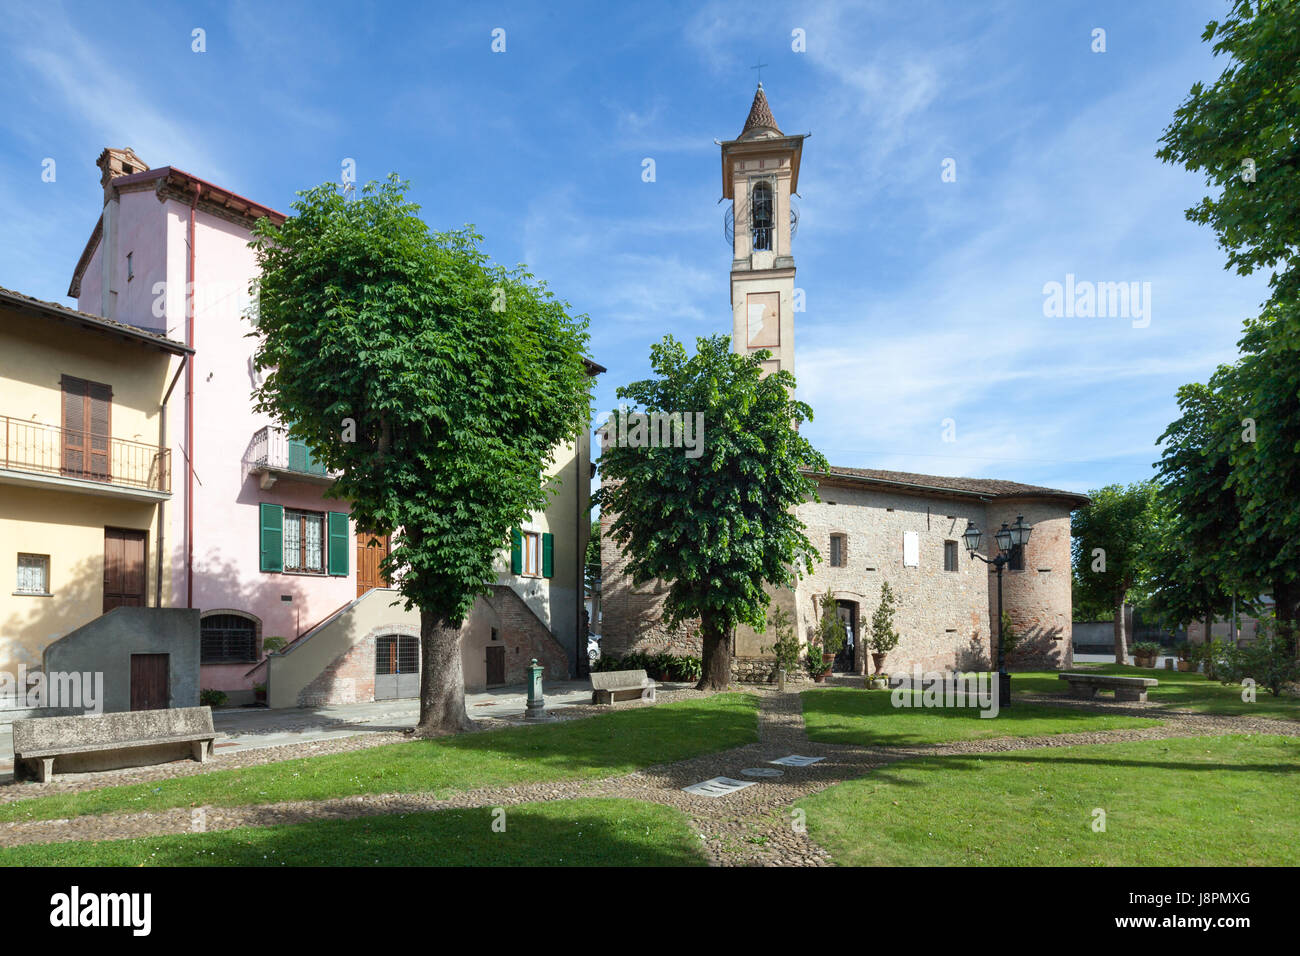 Une vue de Casalnoceto avec la Chiesa di San Rocco (St. Rocco Church). Casalnoceto, Italie Banque D'Images